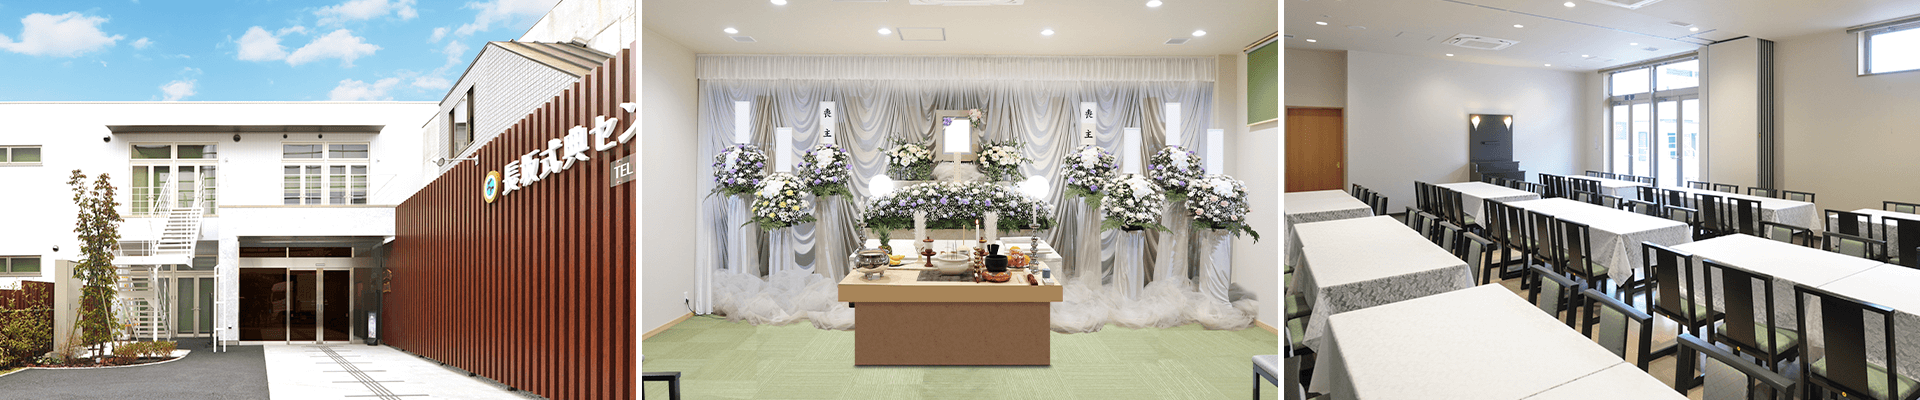 葬儀・葬式・家族葬なら16.5万円からできる長坂式典センター 府中市の葬儀場一覧